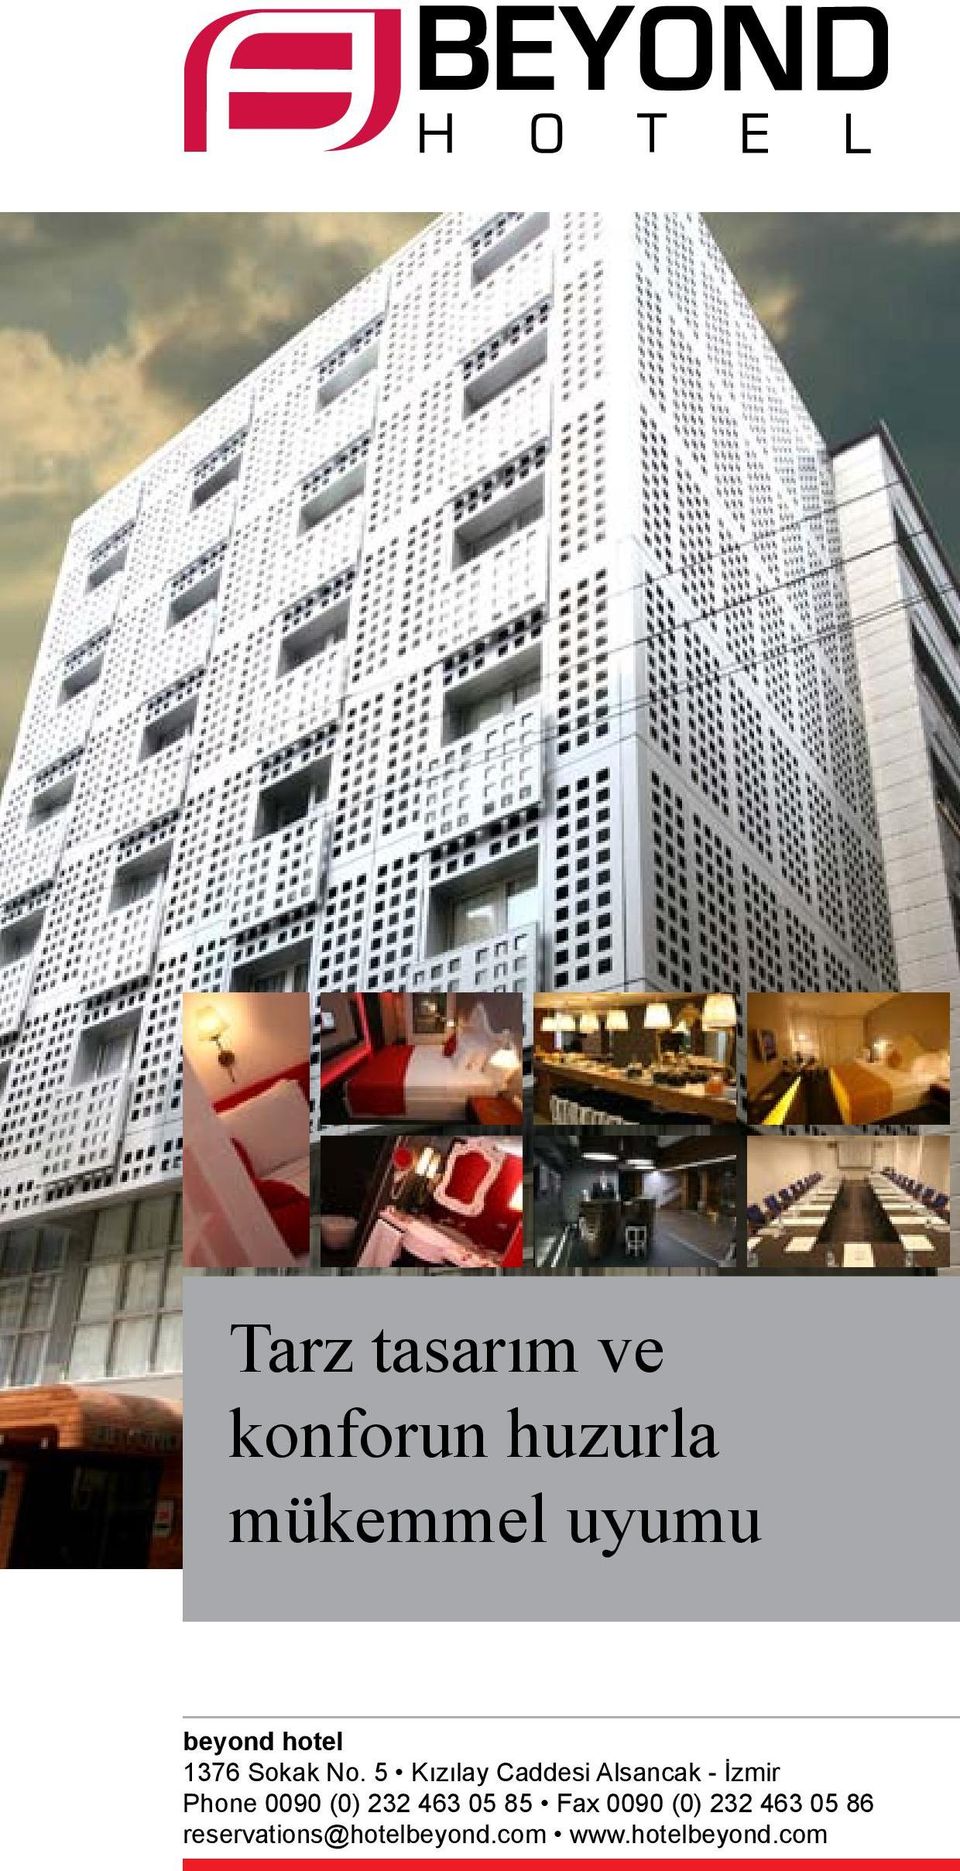 5 Kızılay Caddesi Alsancak - İzmir Phone 0090 (0) 232